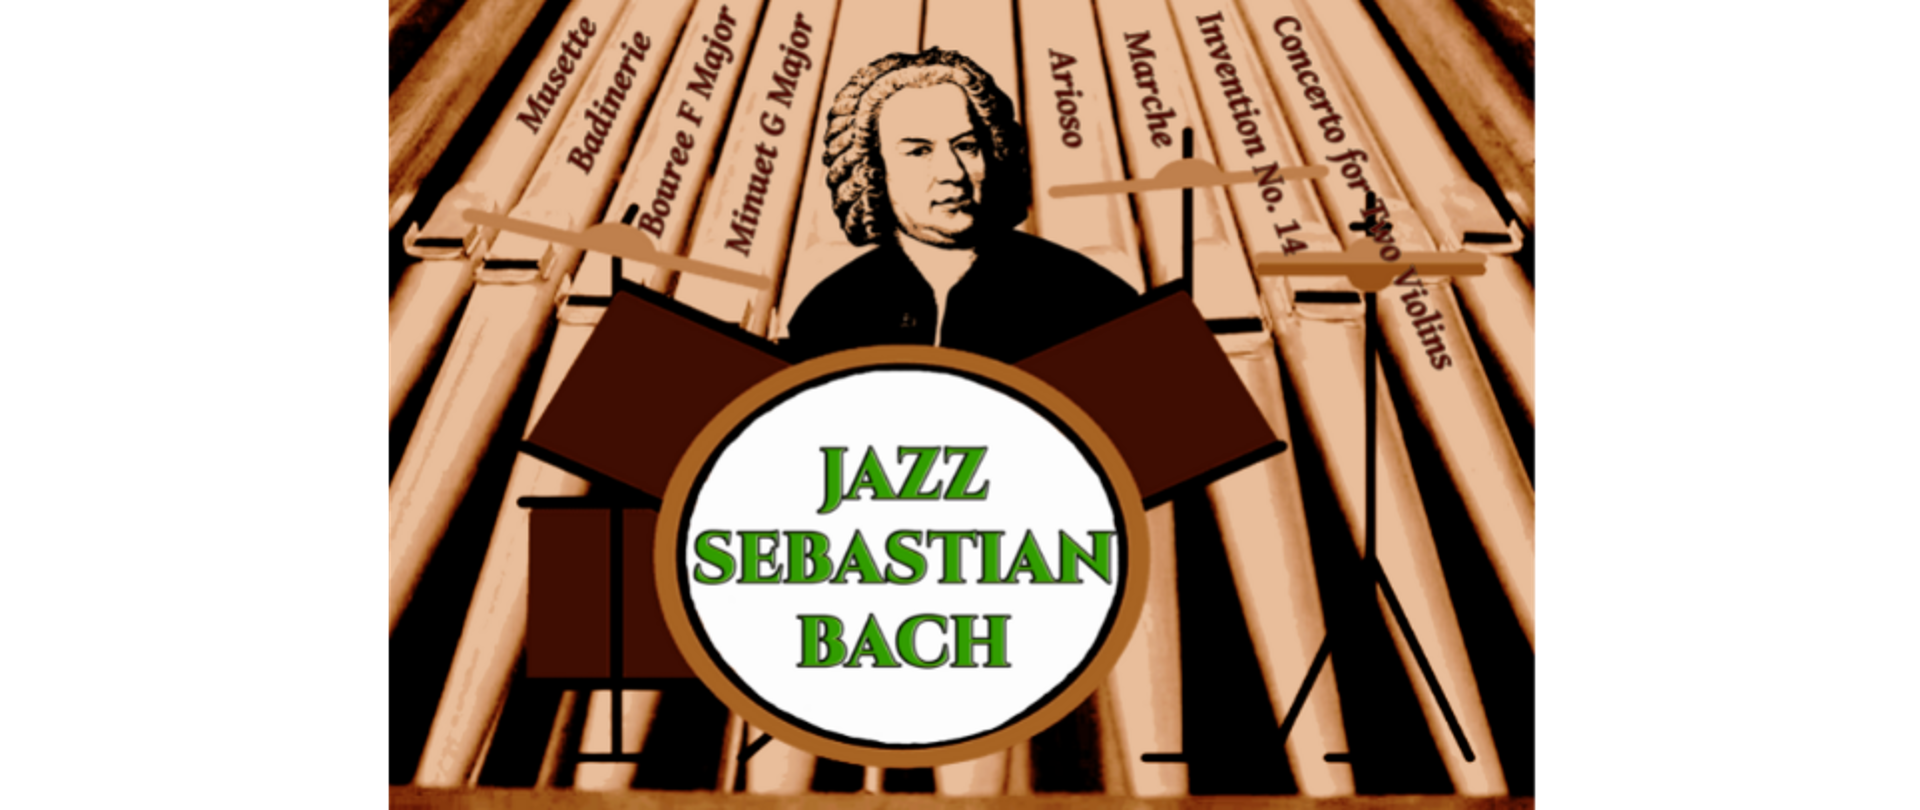 Kolorowy plakat koncertu Jazz Sebastian Bach. Portret Bacha na tle piszczałek organowych. Na każdej z piszczałek tytuł utworu (Musette, Badinerie, Bouree, Menuet, Arioso, Marsz, Inwrncja nr 14, Koncert na dwoje skrzypiec).